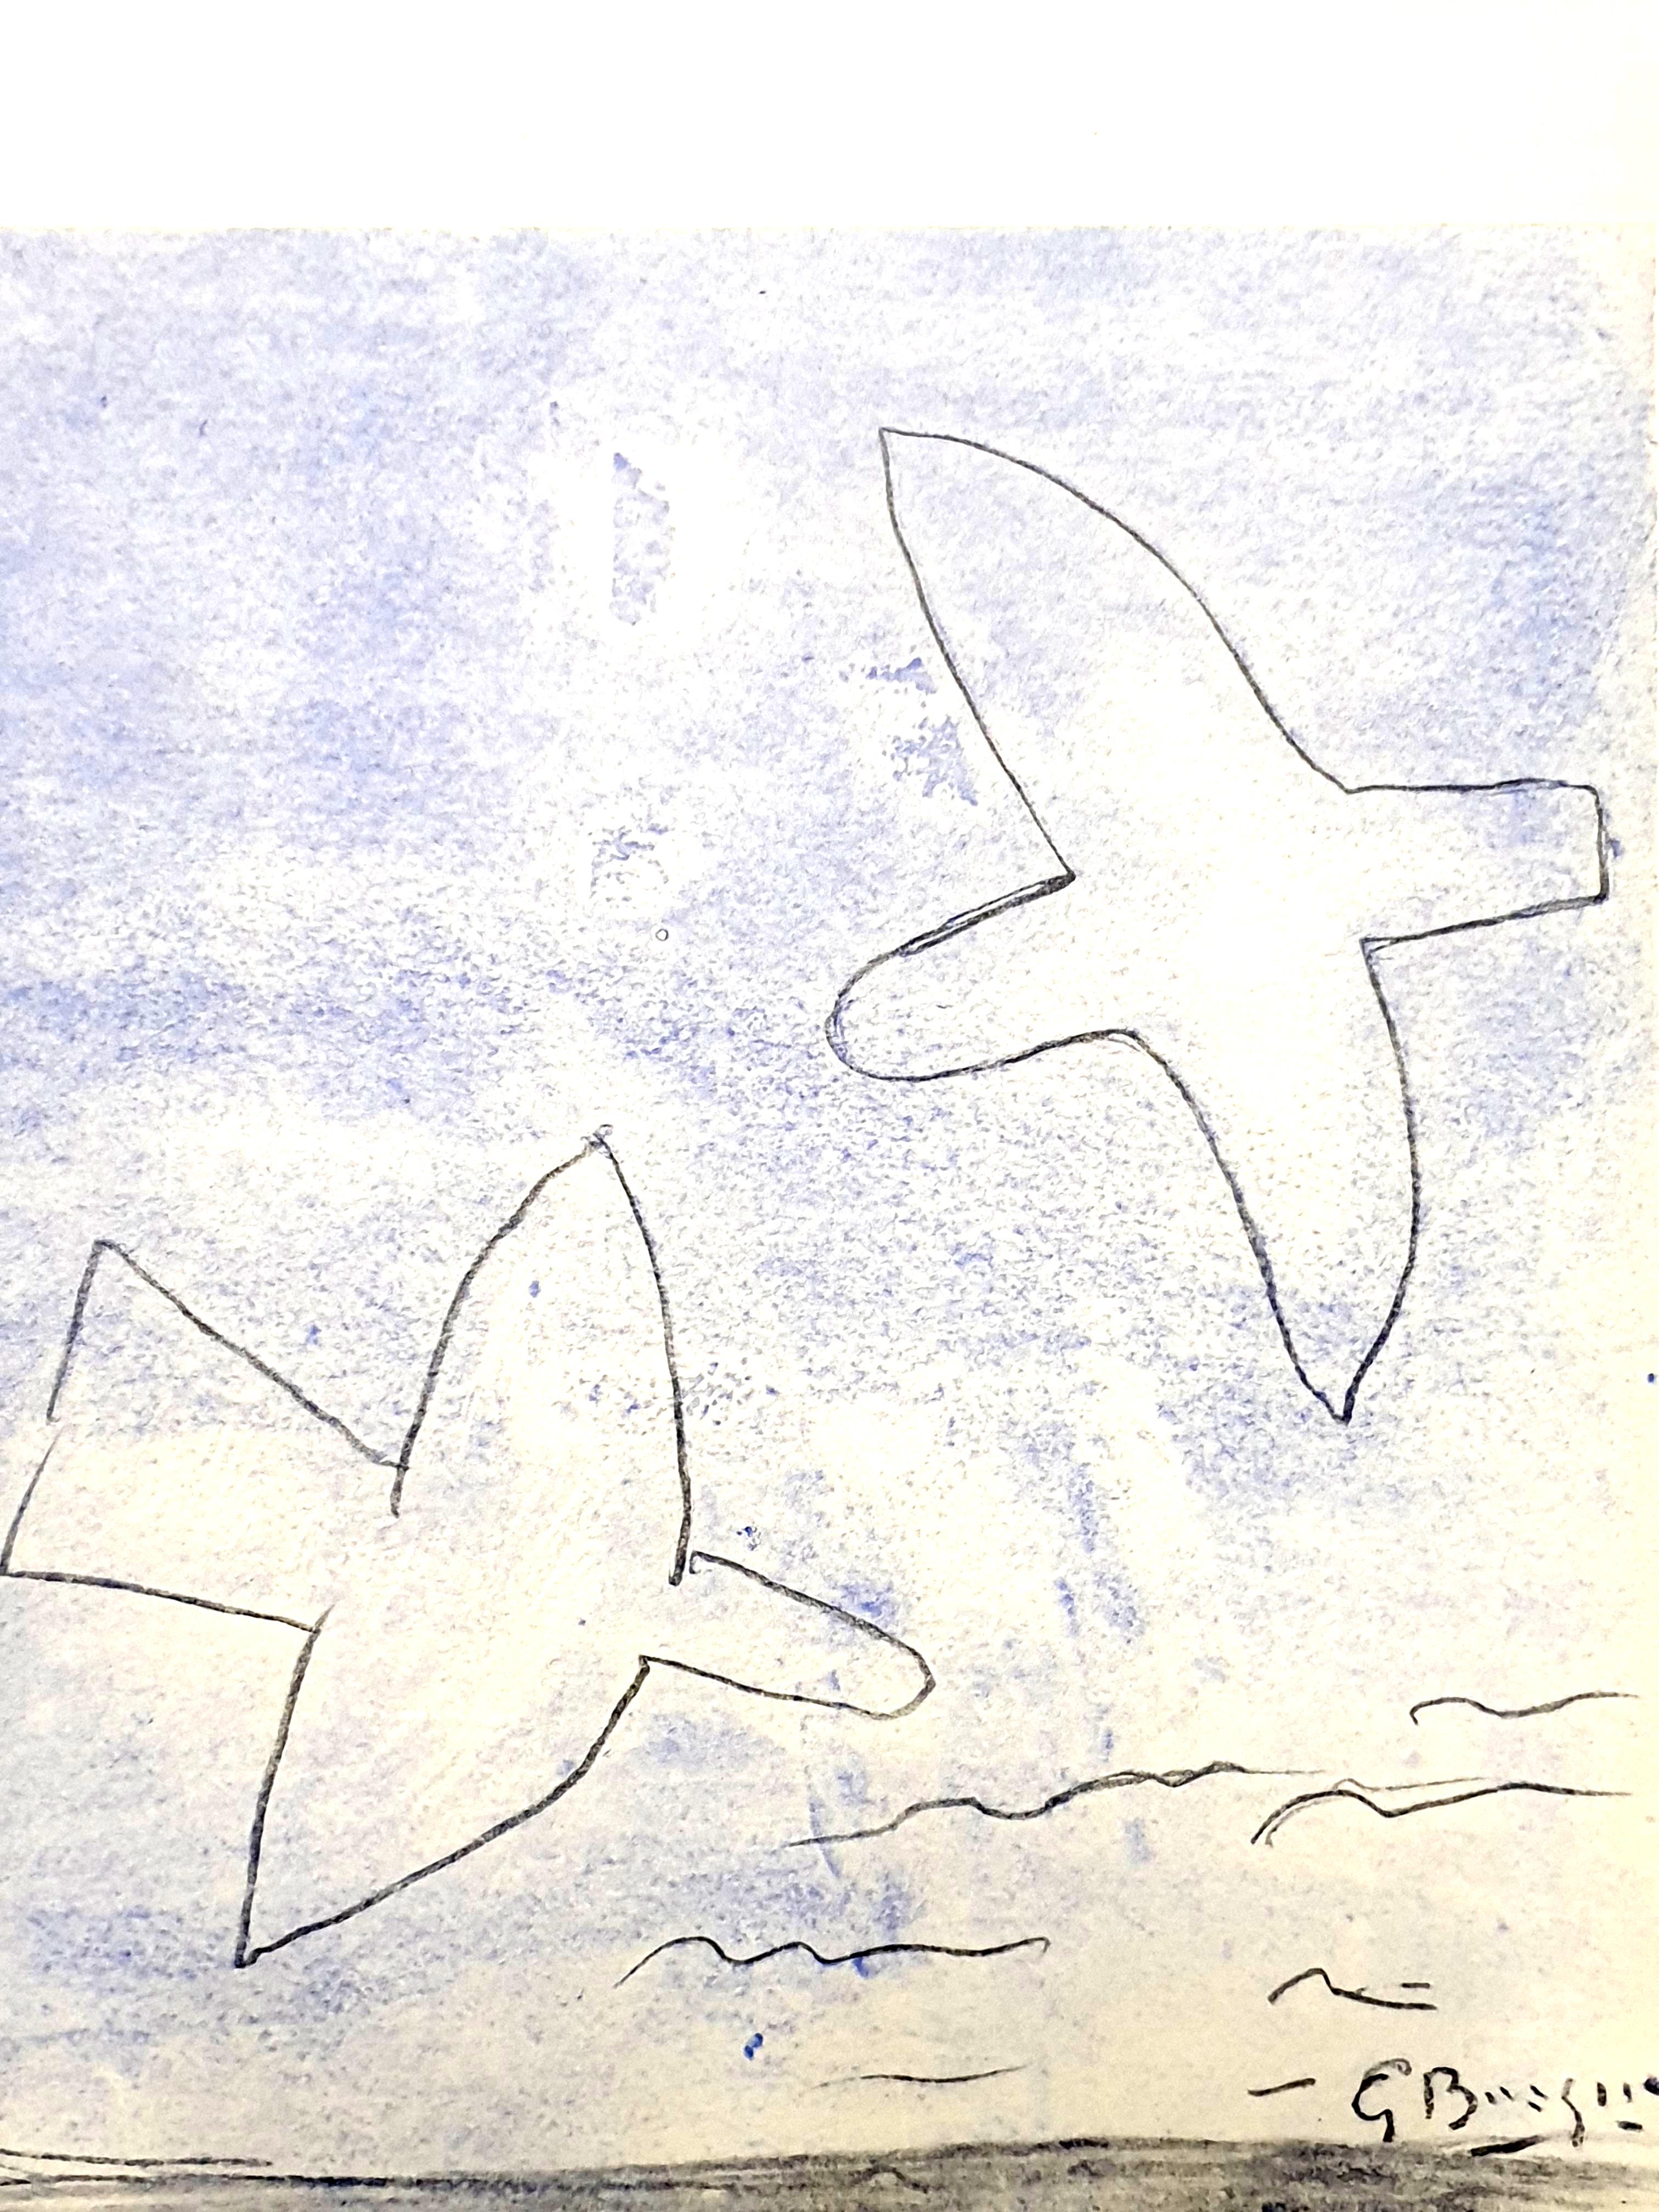 nach Georges Braque
Oiseaux
Farbiges Pochoir auf Papier
Veröffentlicht in der luxuriösen Kunstzeitschrift XXe Siecle (Ausgabe Nr. 11 "Les nouveaux rapports de l'art et de la nature")
1958
Abmessungen: 32 x 24 cm
Herausgeber: G. di San